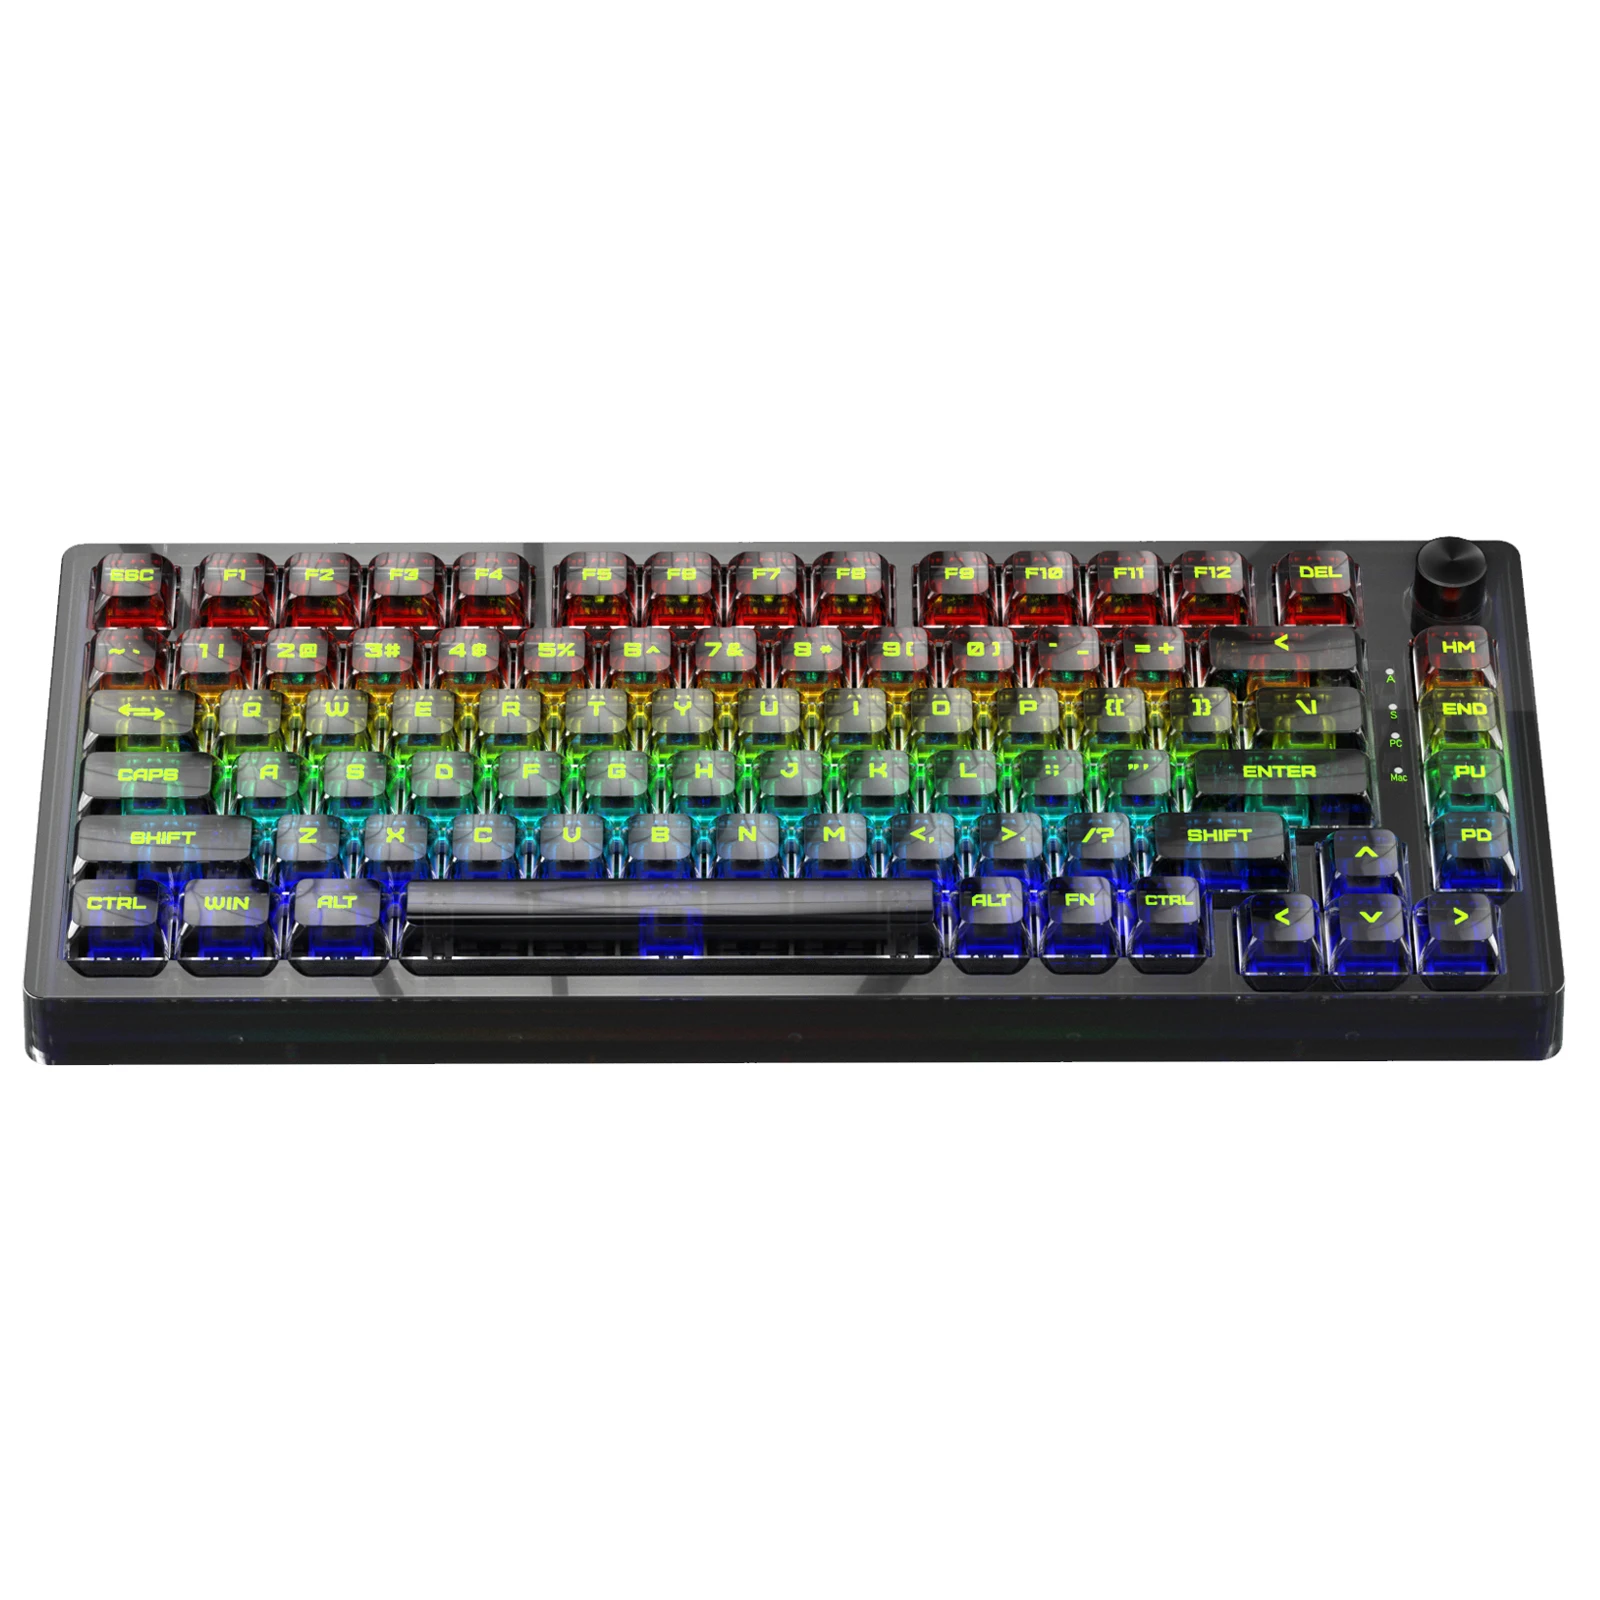 

Механическая игровая клавиатура MK32, 82 клавиши, RGB, USB, поддержка Bluetooth, беспроводная, 2,4 ГГц, 3 режима, геймер для компьютера, ПК, ноутбука